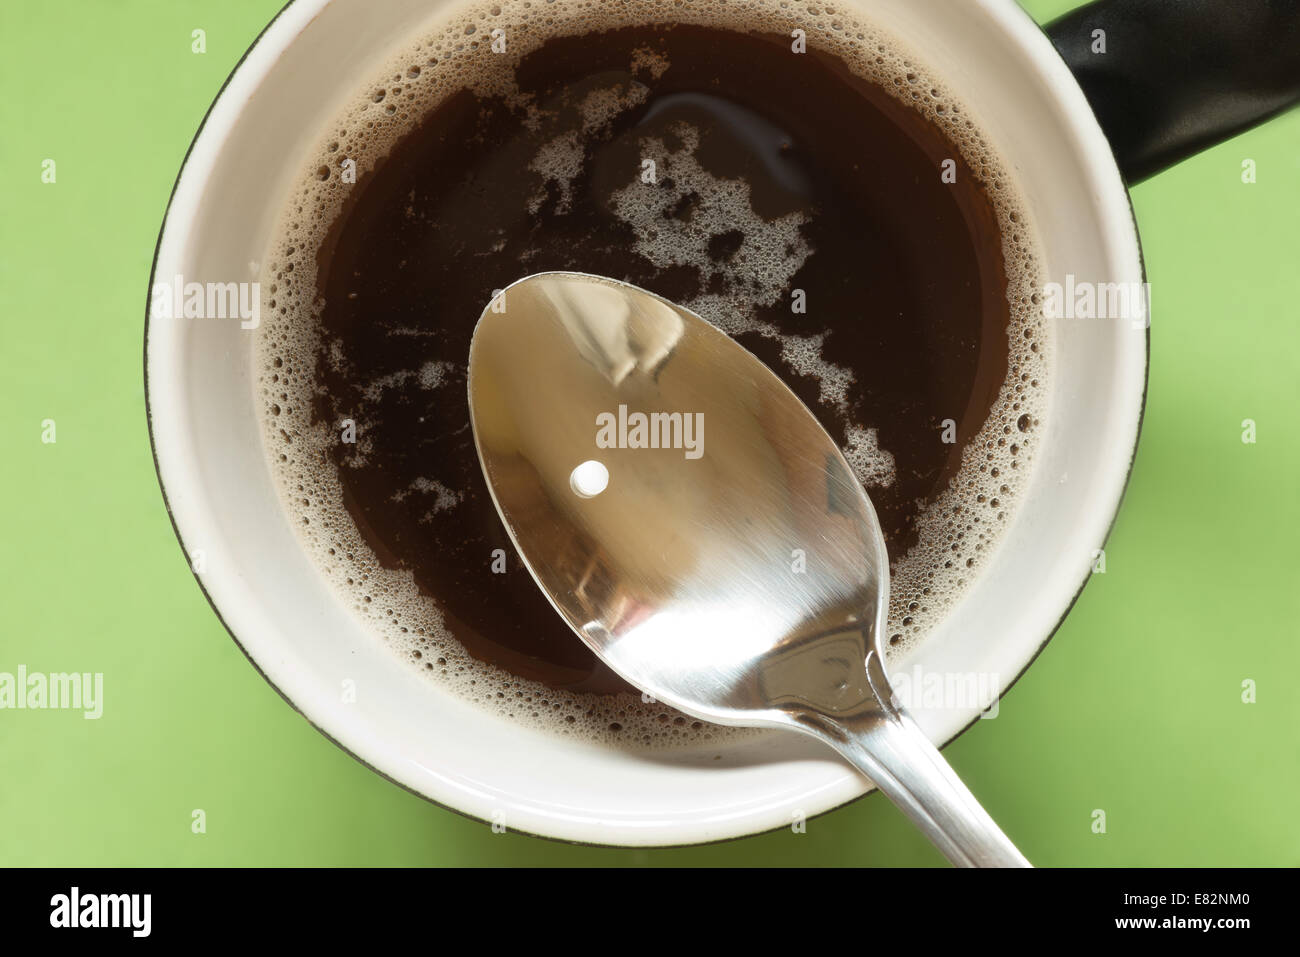 Nicht-Zucker Süßstoff Polyole oder natürliche Kristallzucker Saccharose Zucker Süßstoff für eine Tasse Tee oder Kaffee trinken Stockfoto